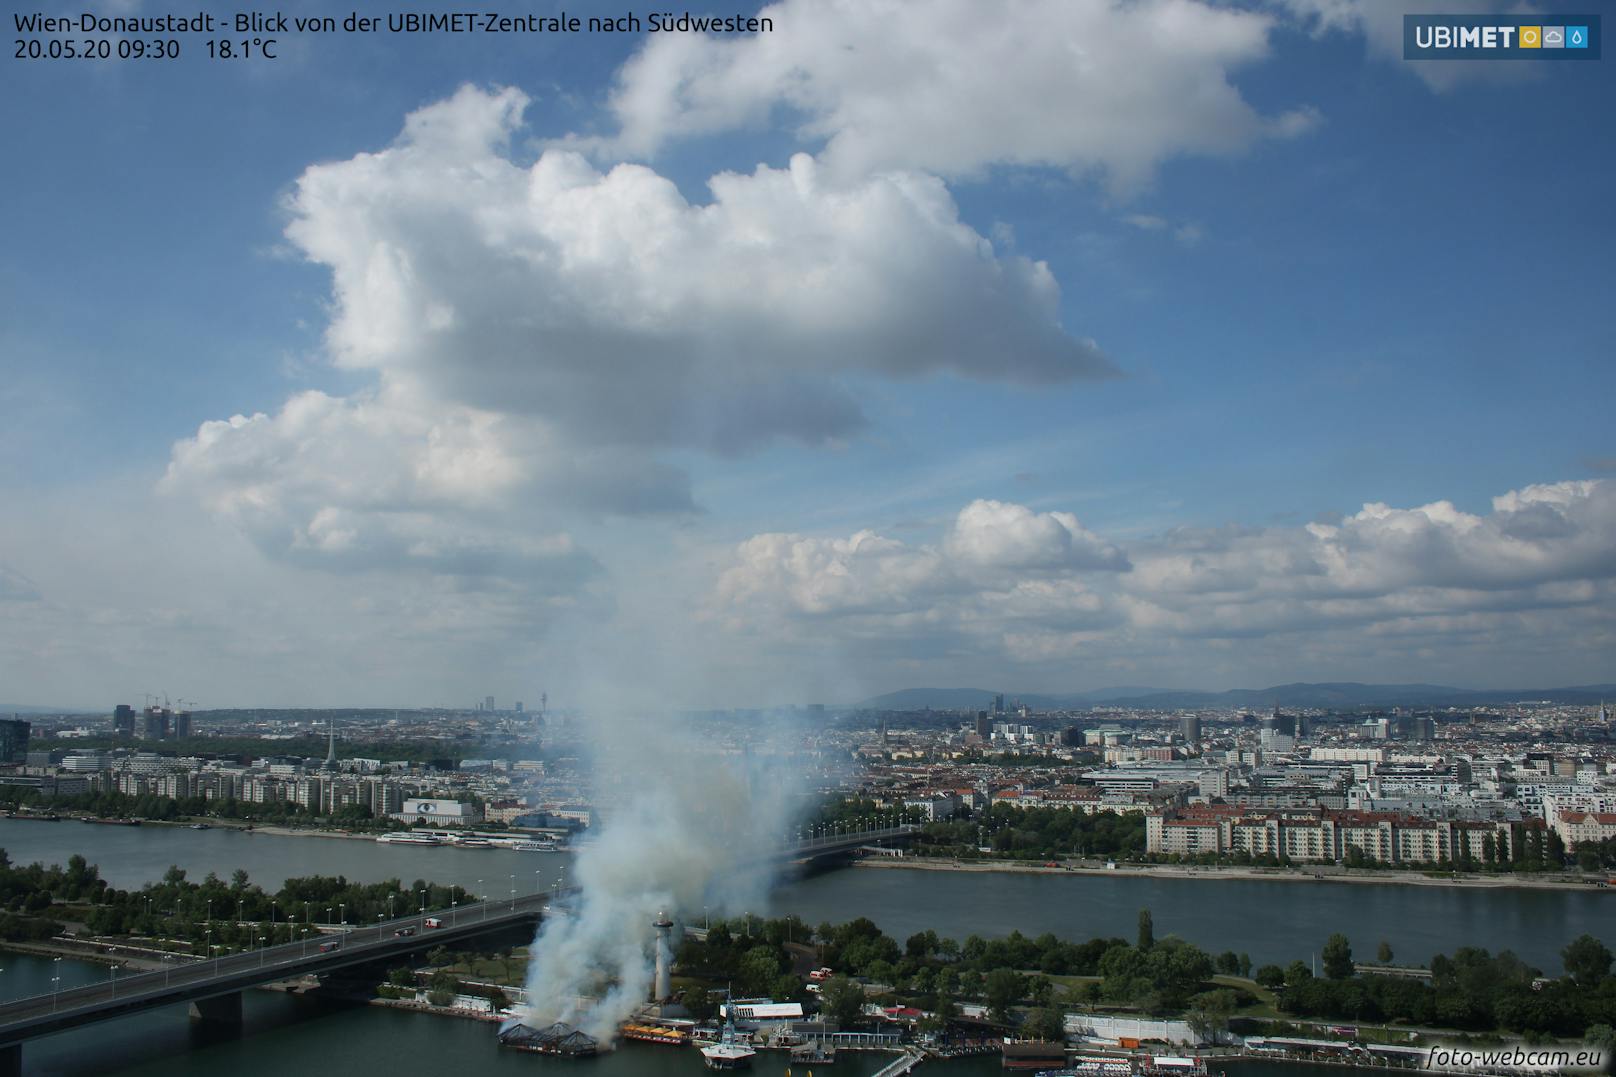 Eine Webcam der UBIMET zeigt deutlich, wann der Brand ausbrach